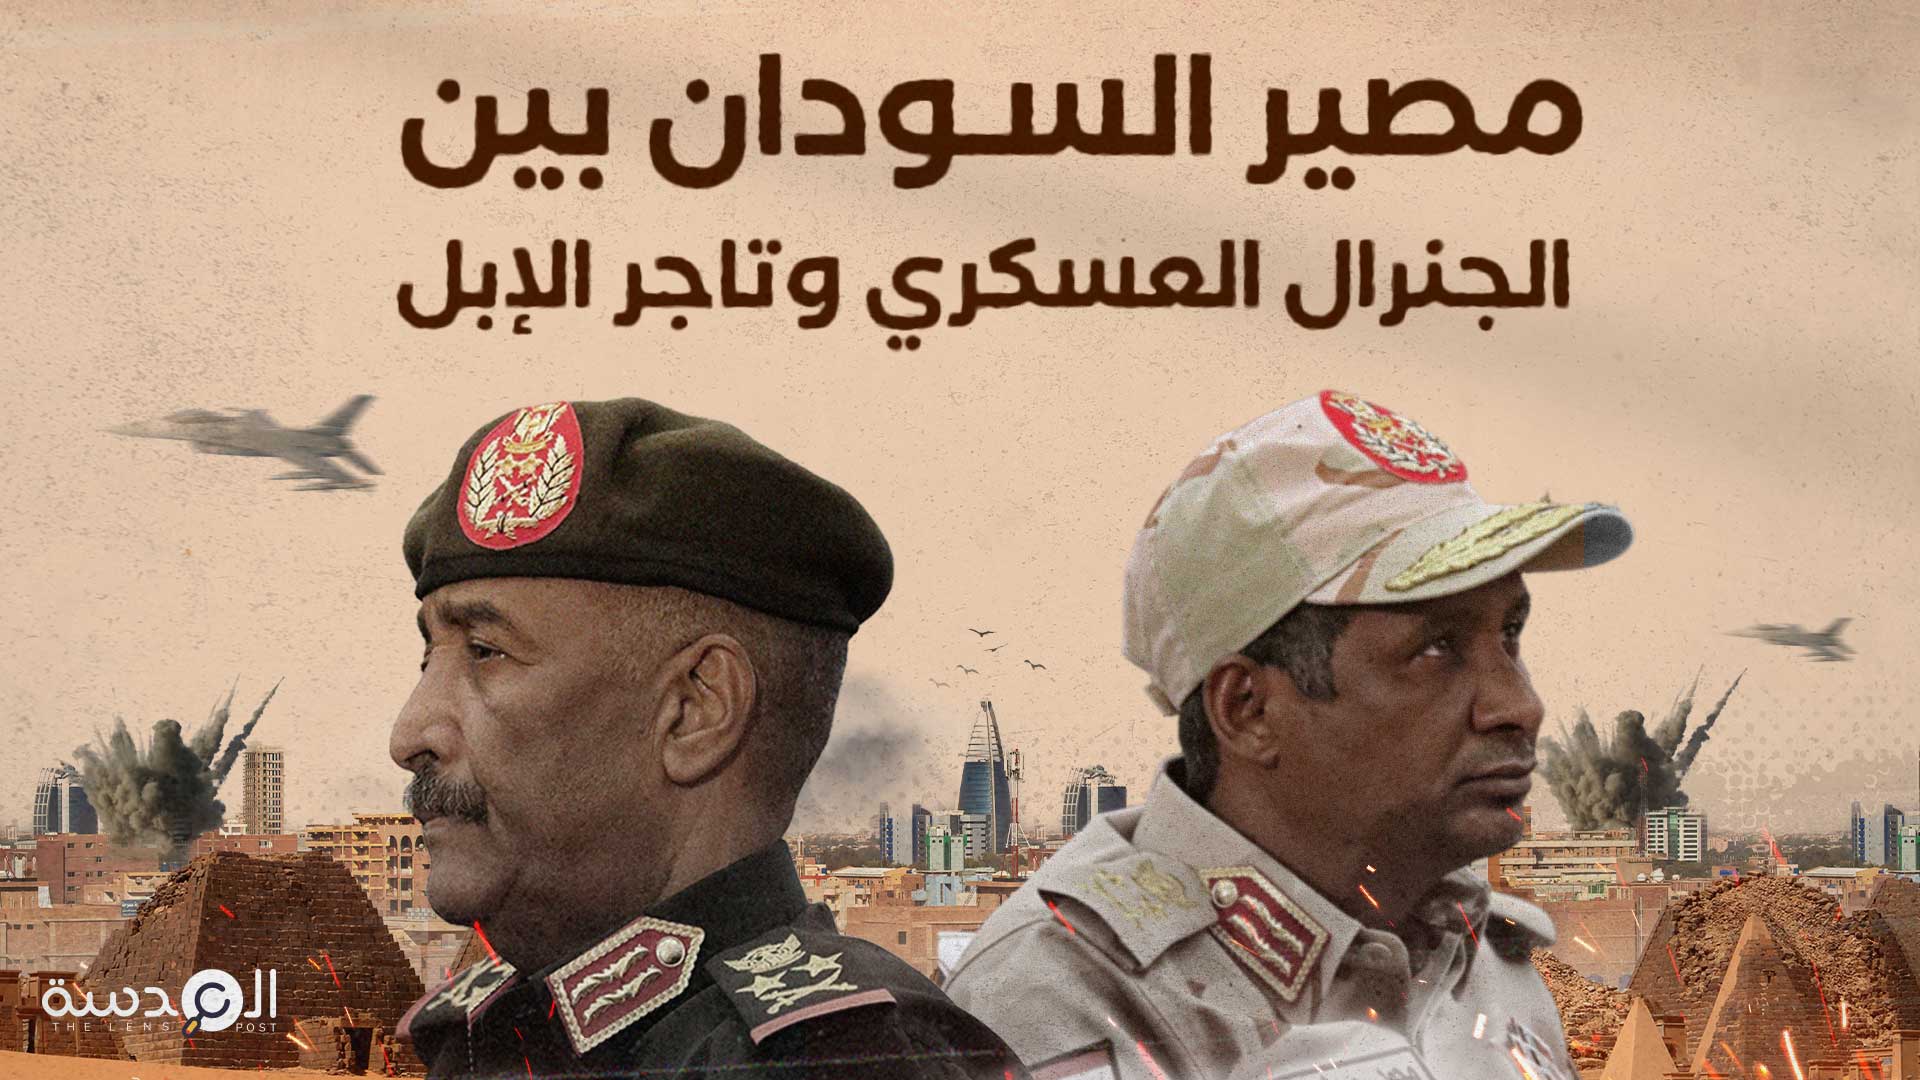 مصير السودان بين الجنرال العسكري وتاجر الإبل